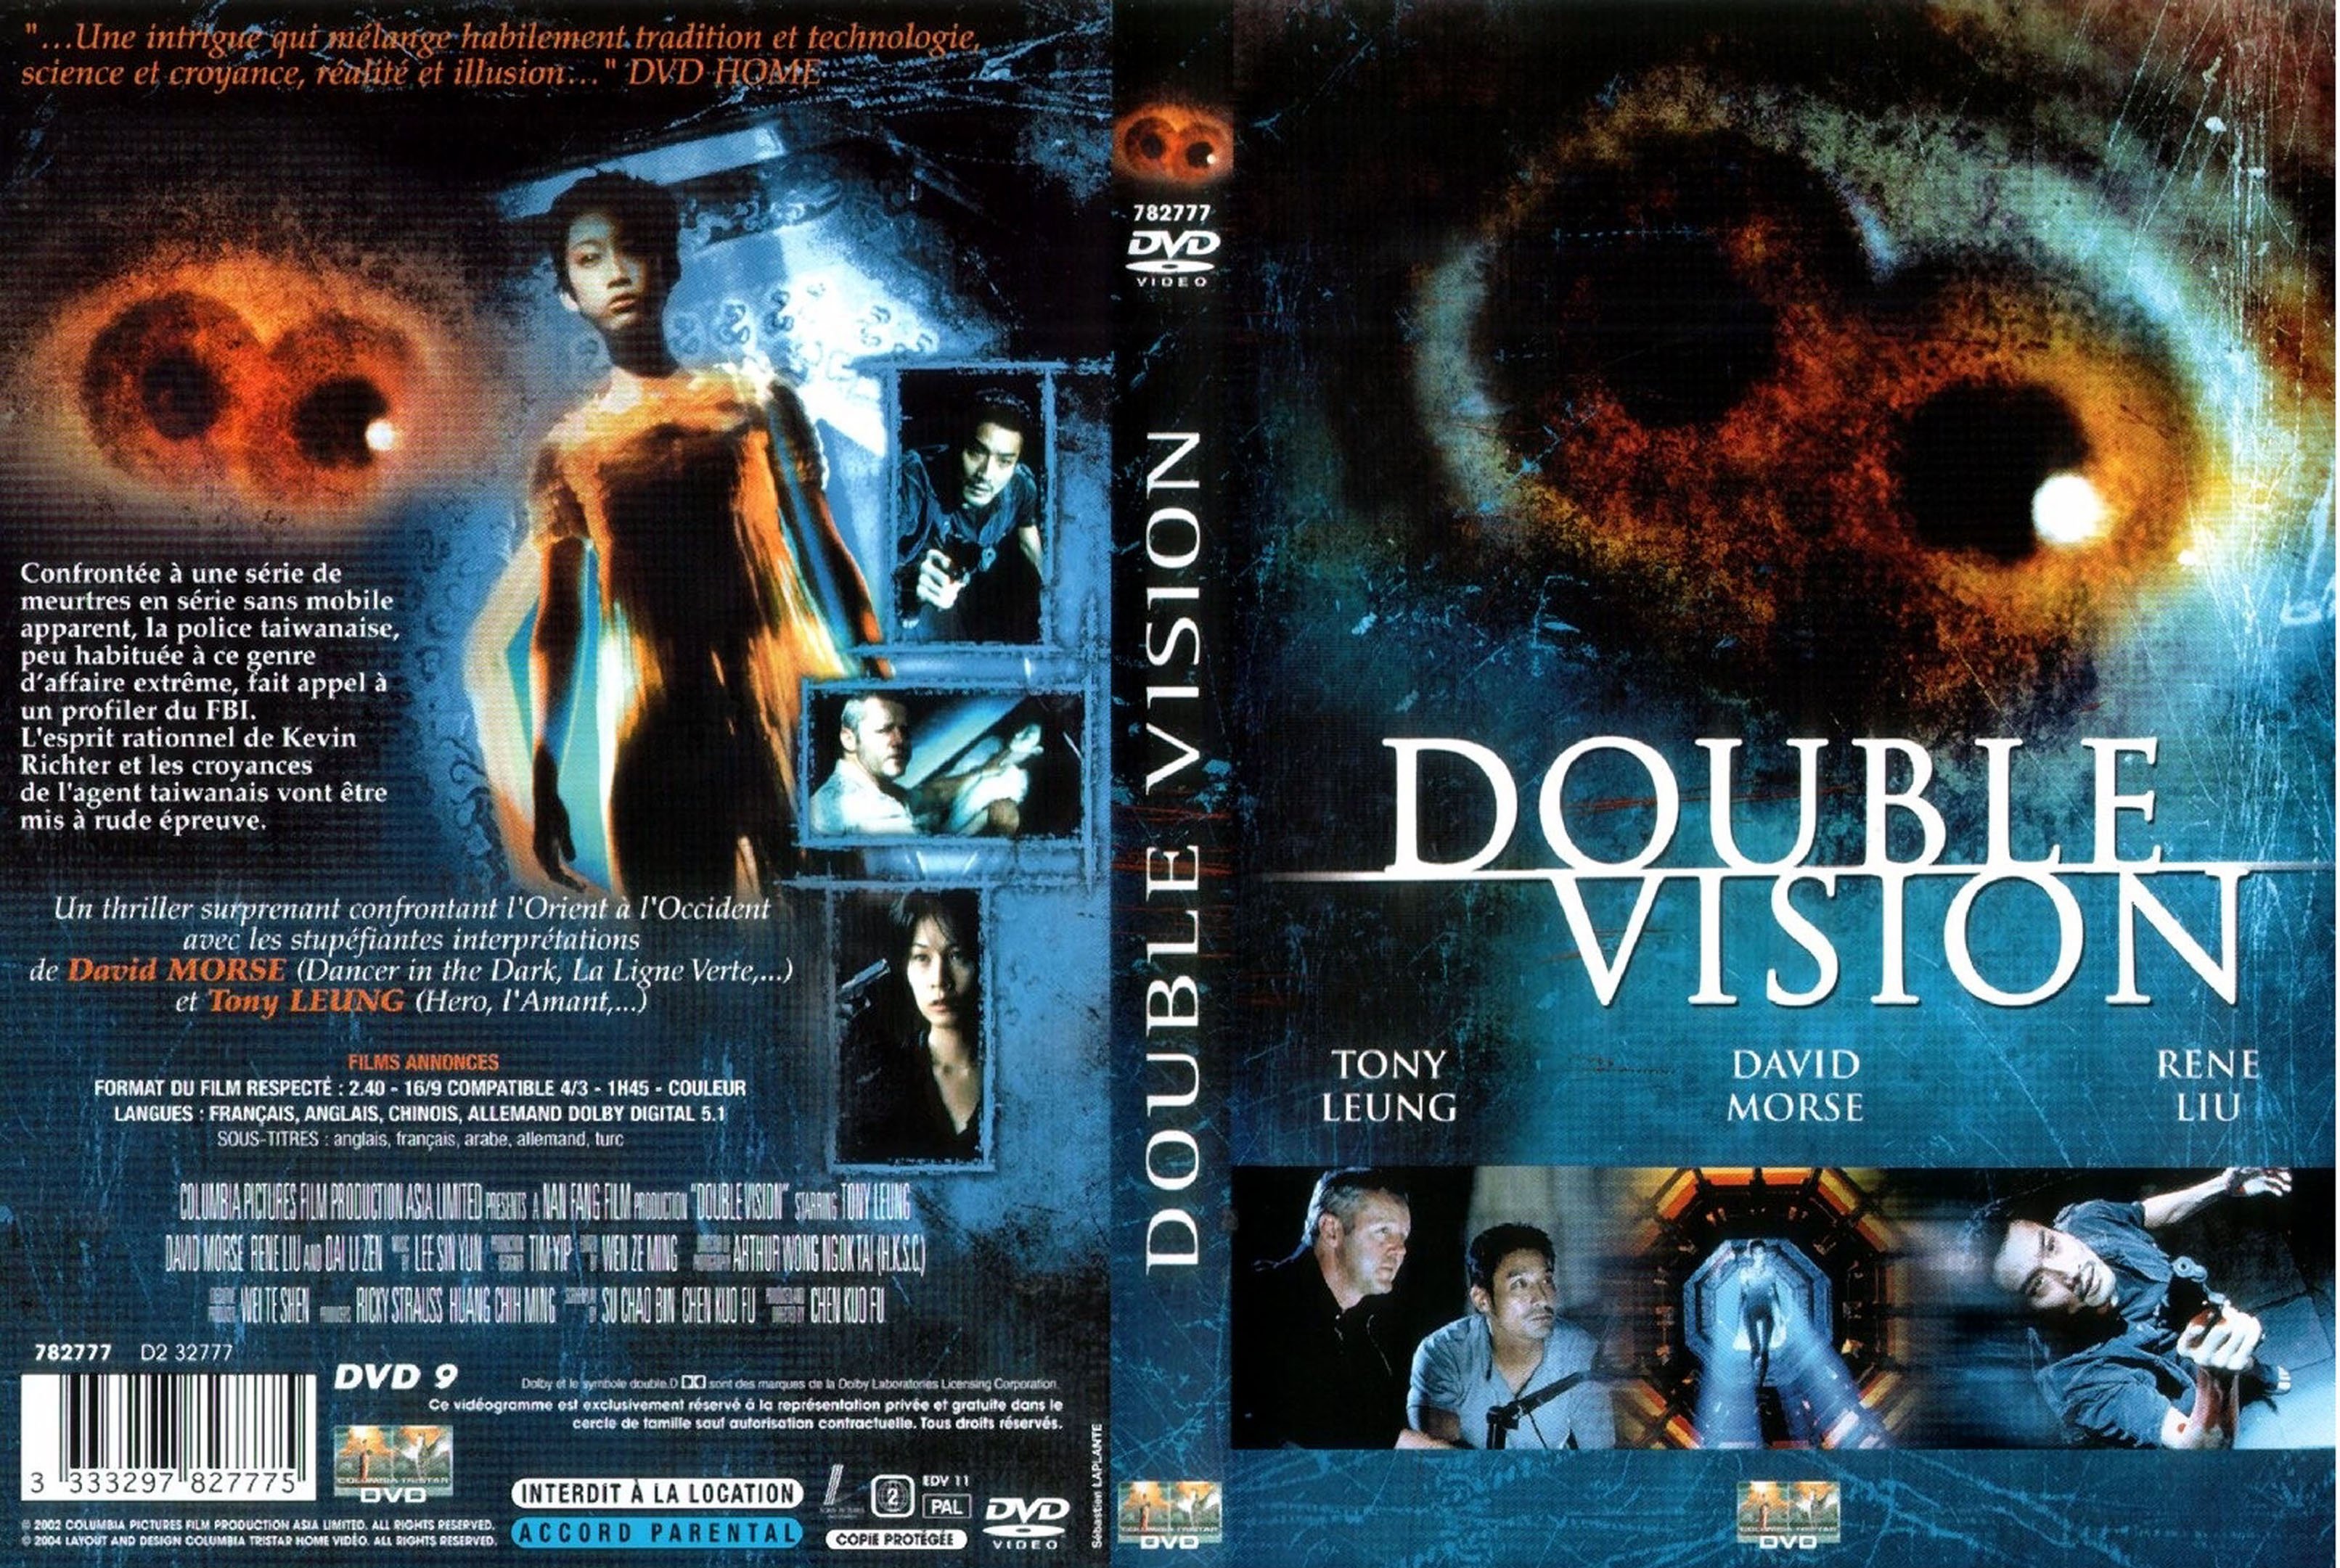 Jaquette DVD Double vision